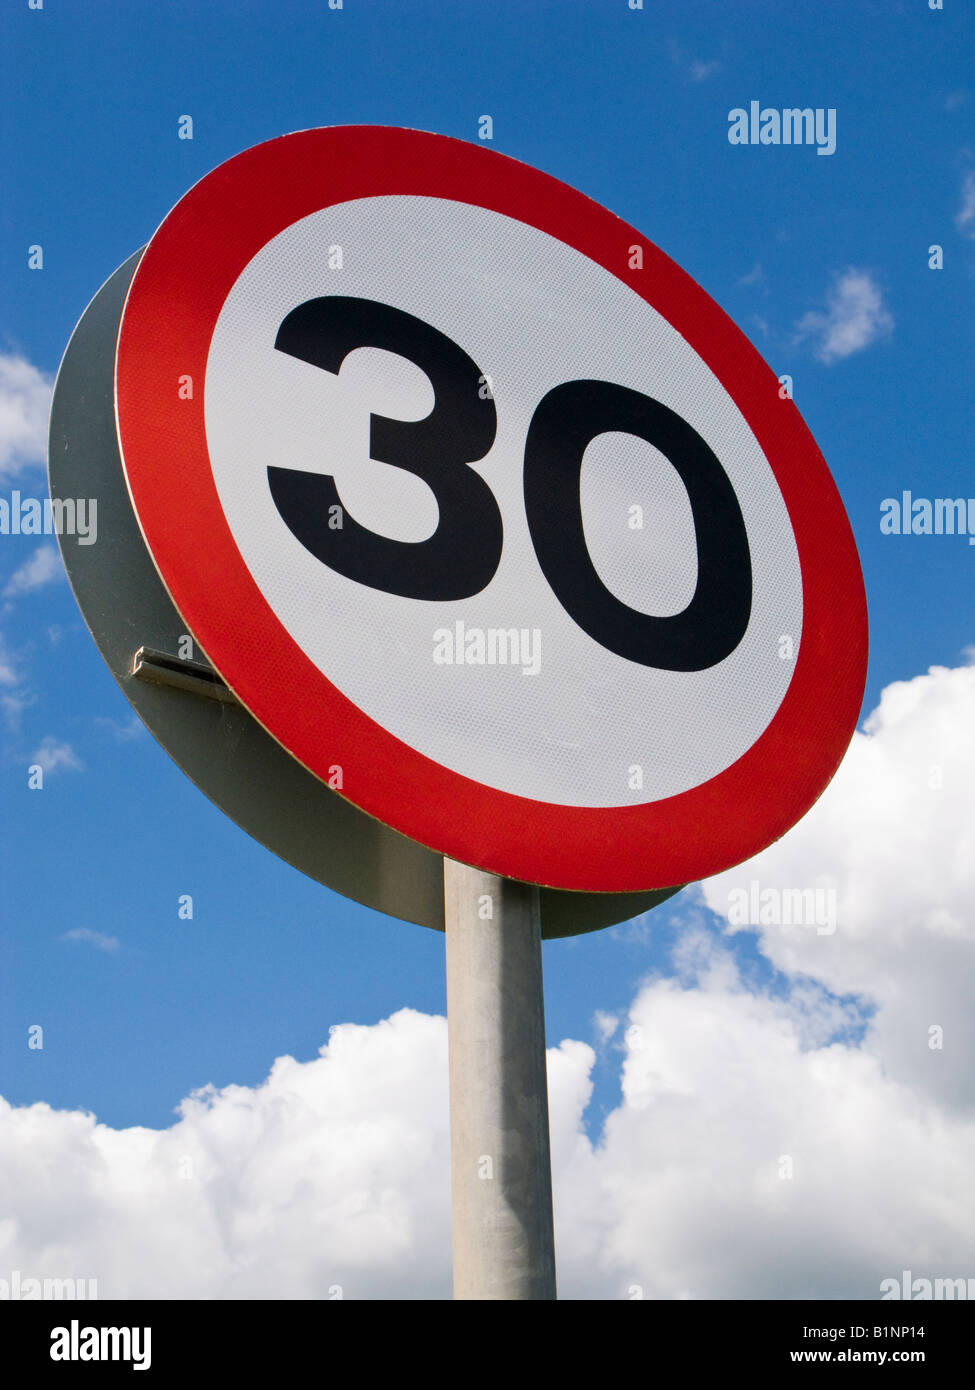 Limite di velocitã immagini e fotografie stock ad alta risoluzione - Alamy